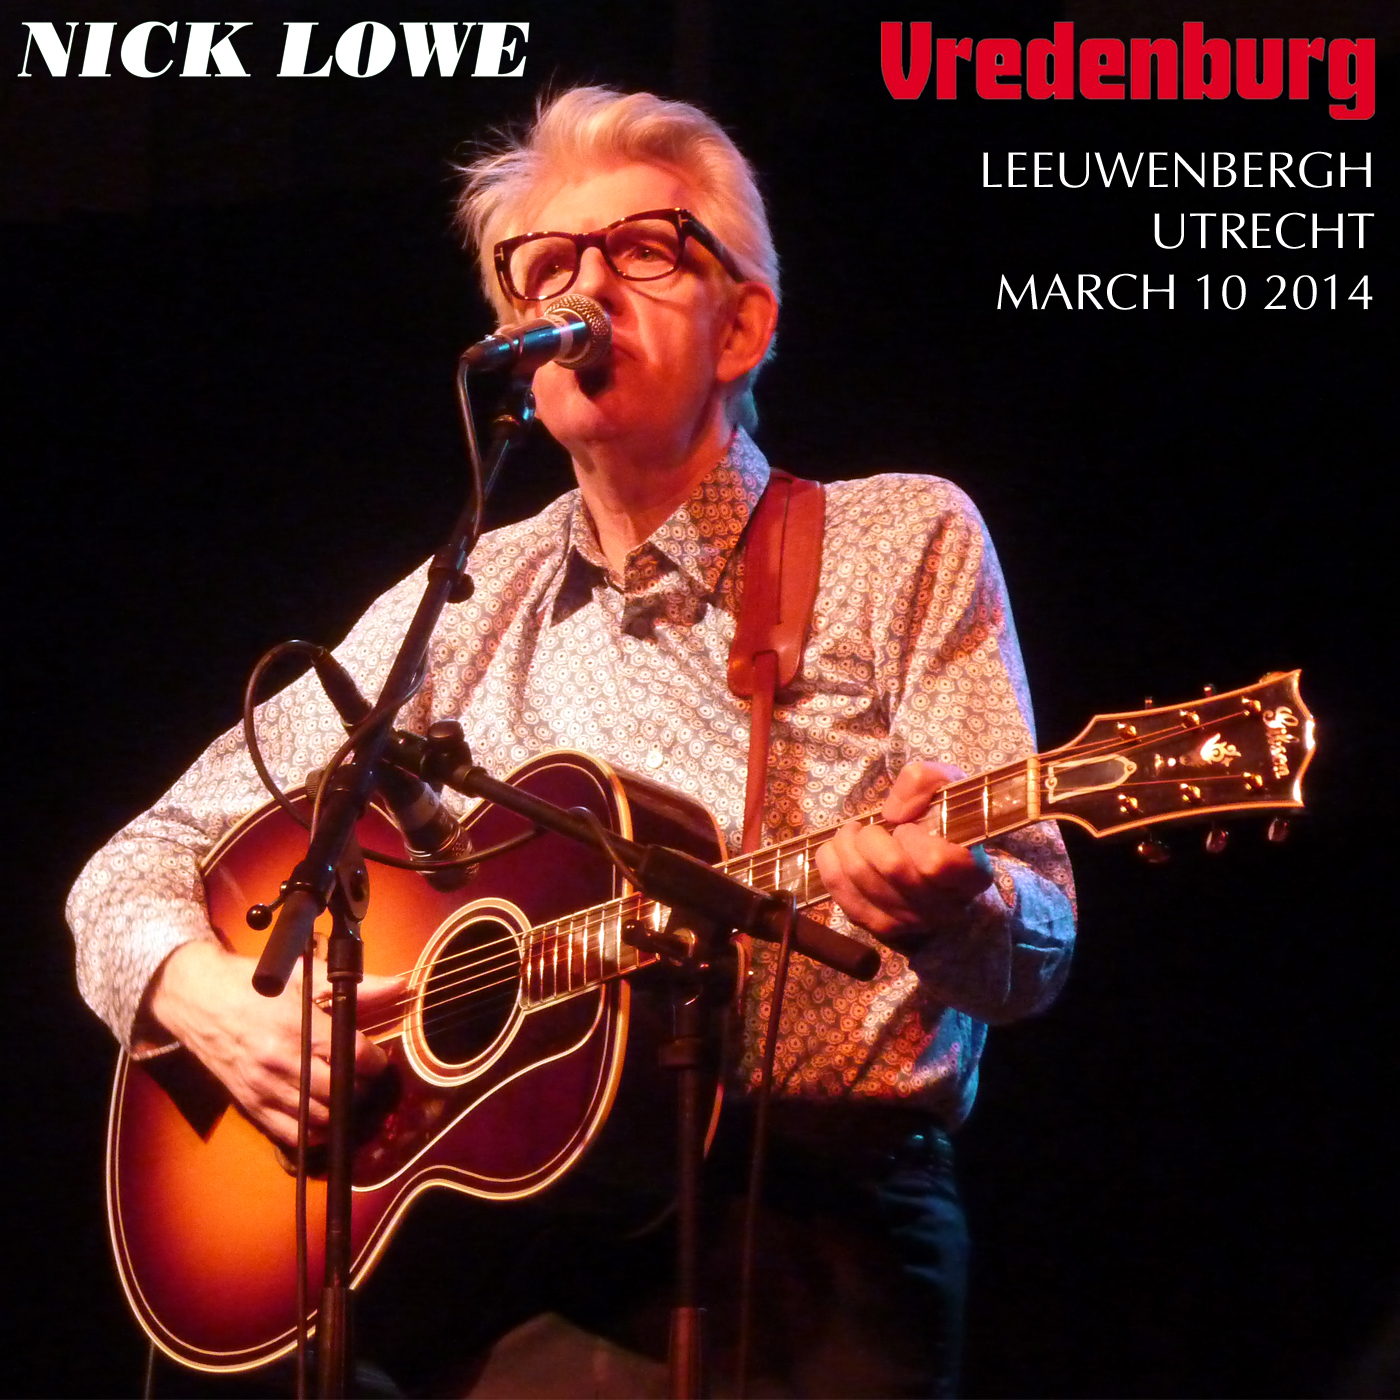 NickLowe2014-03-10VredenburgLeeuwenburghUtrechtHolland (1).jpg